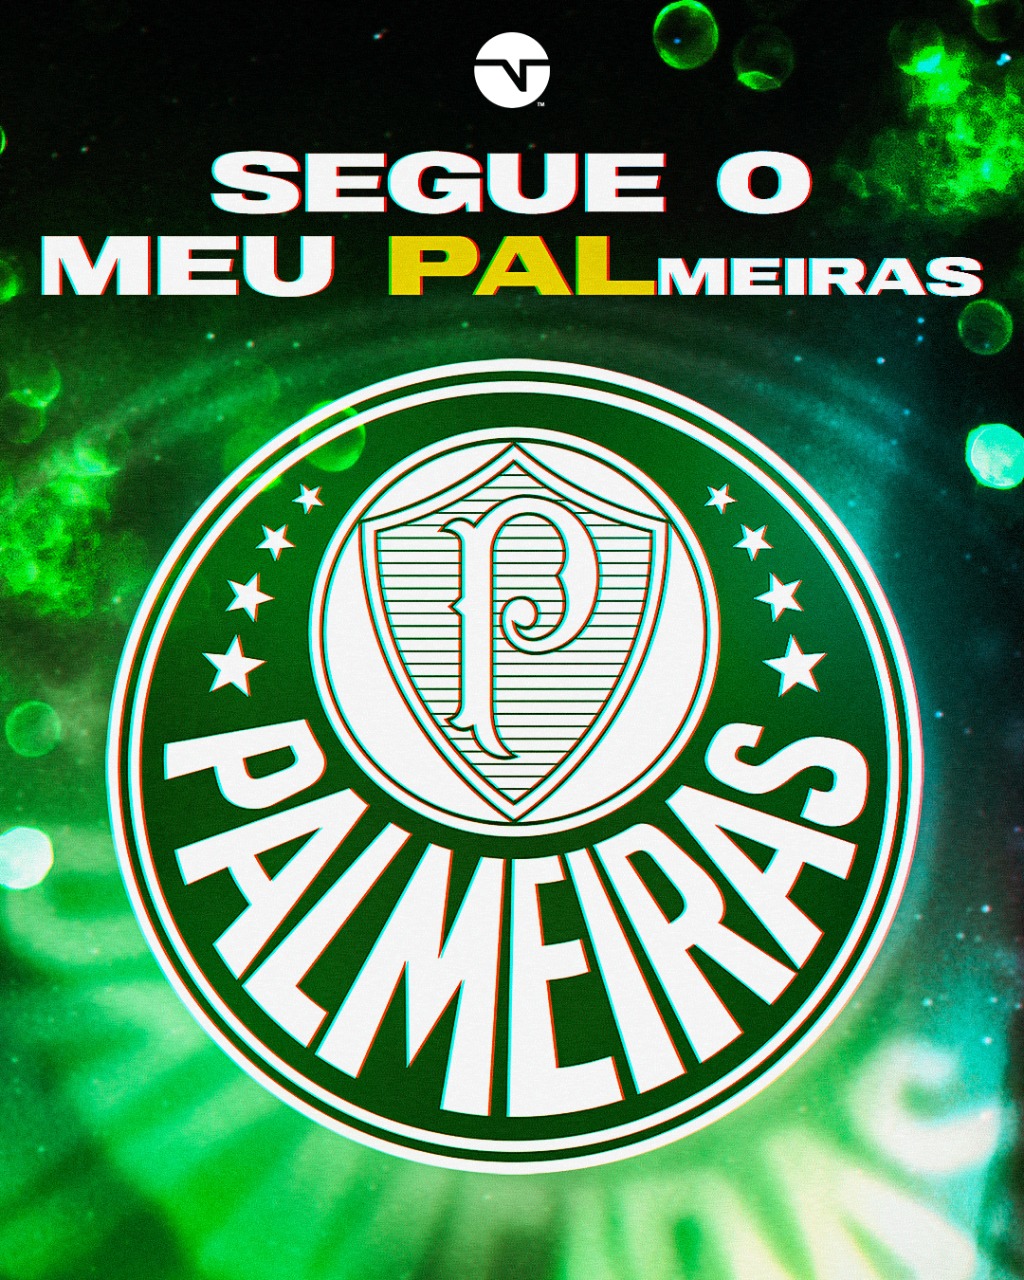 TNT Sports Brasil - PALMEIRAS NO TOPO! 🐷🟢⚪ Se liga nesse ranking dos  melhores clubes do Brasil! Seu time tá nessa lista, torcedor? Crédito: Opta  Power Ranking